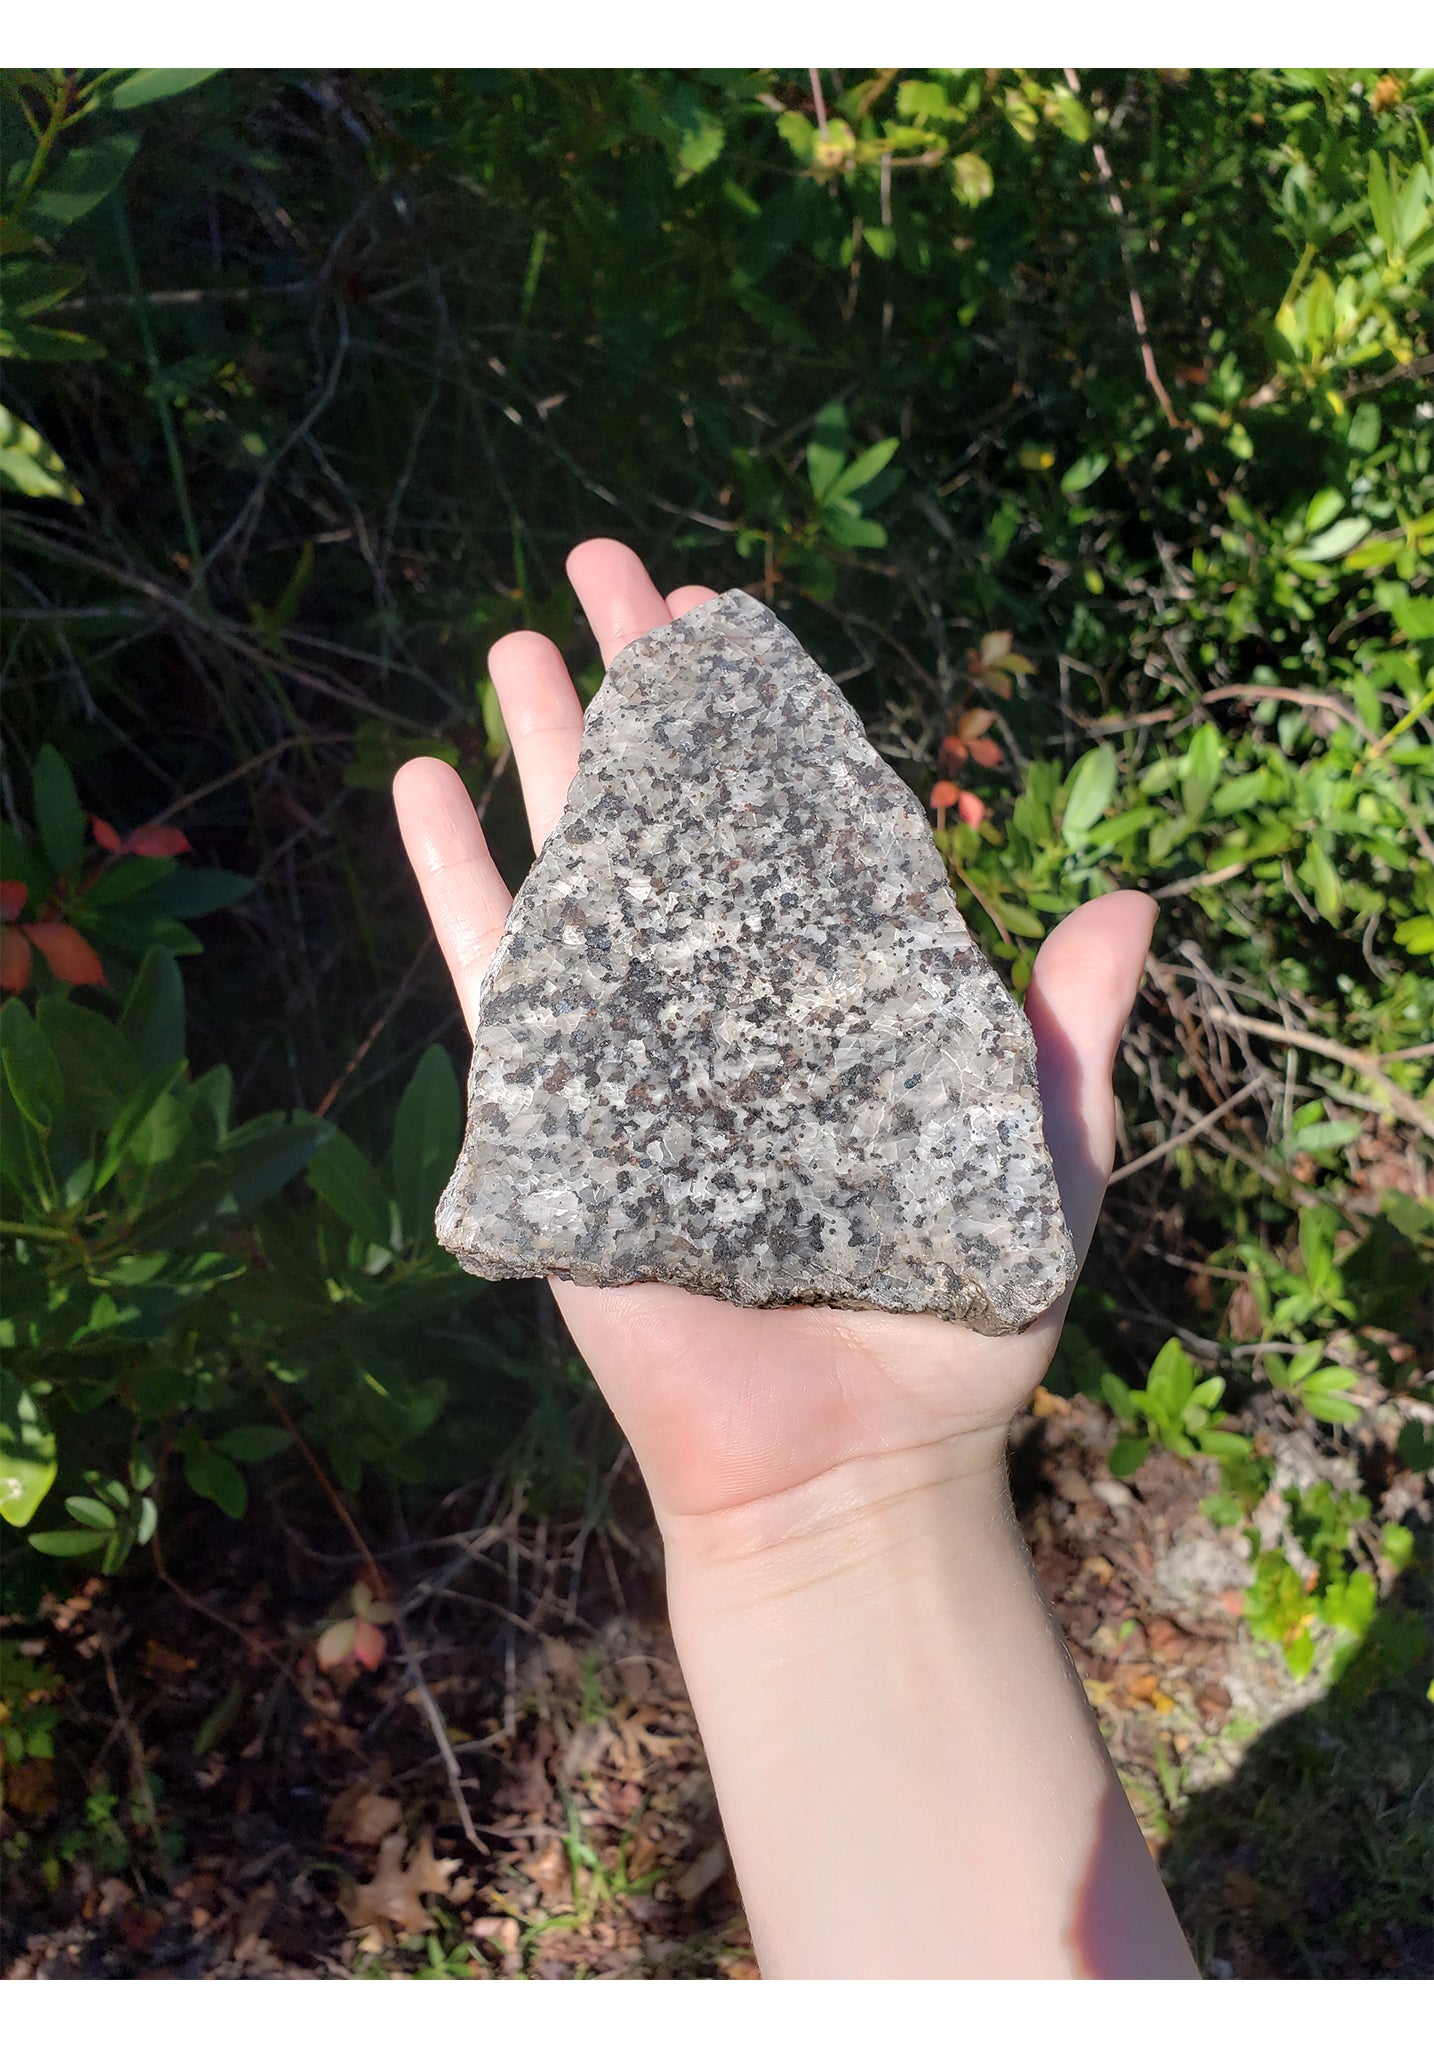 Franklin Willemite in Calcite Matrix Natural Gemstone Slab 5